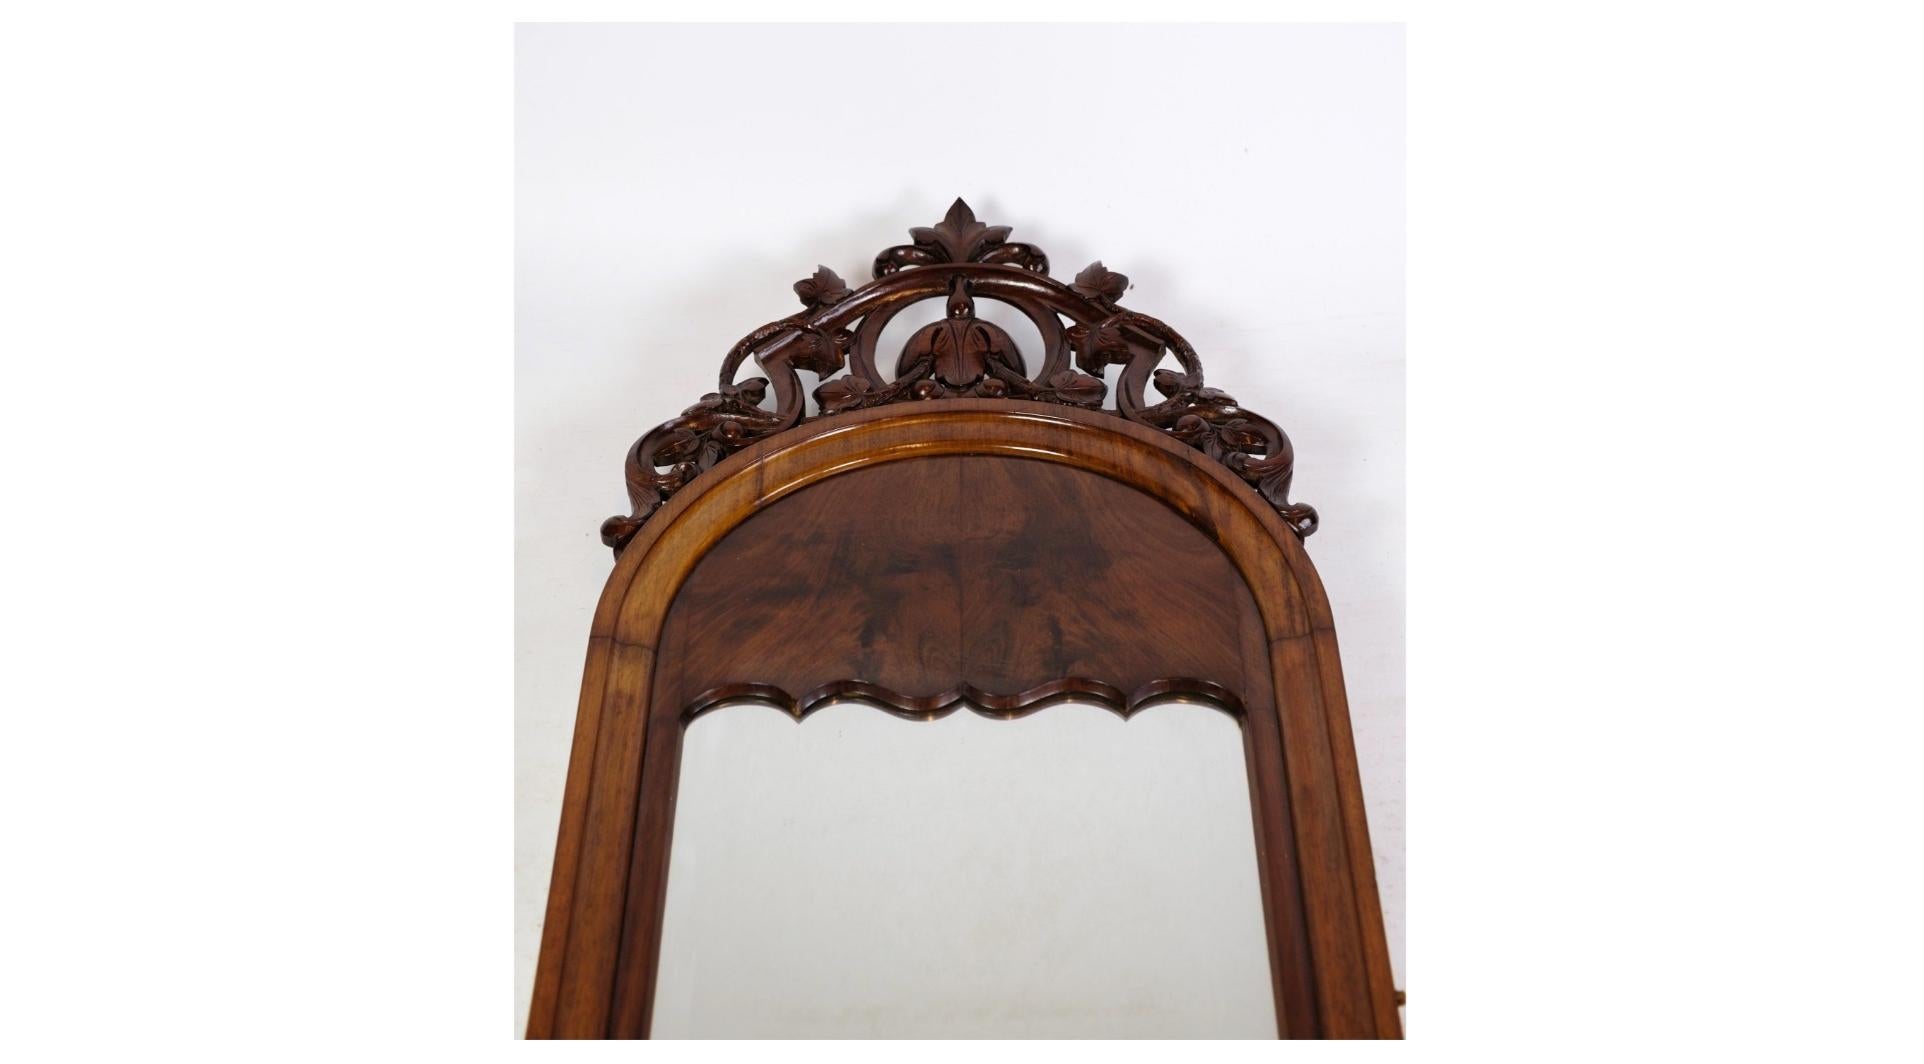 Le miroir antique Christian Eleg, décoré en acajou des années 1860, est une magnifique pièce d'histoire du mobilier qui respire l'élégance et la finesse. Ce miroir témoigne d'une époque de raffinement et d'artisanat typique de l'esthétique